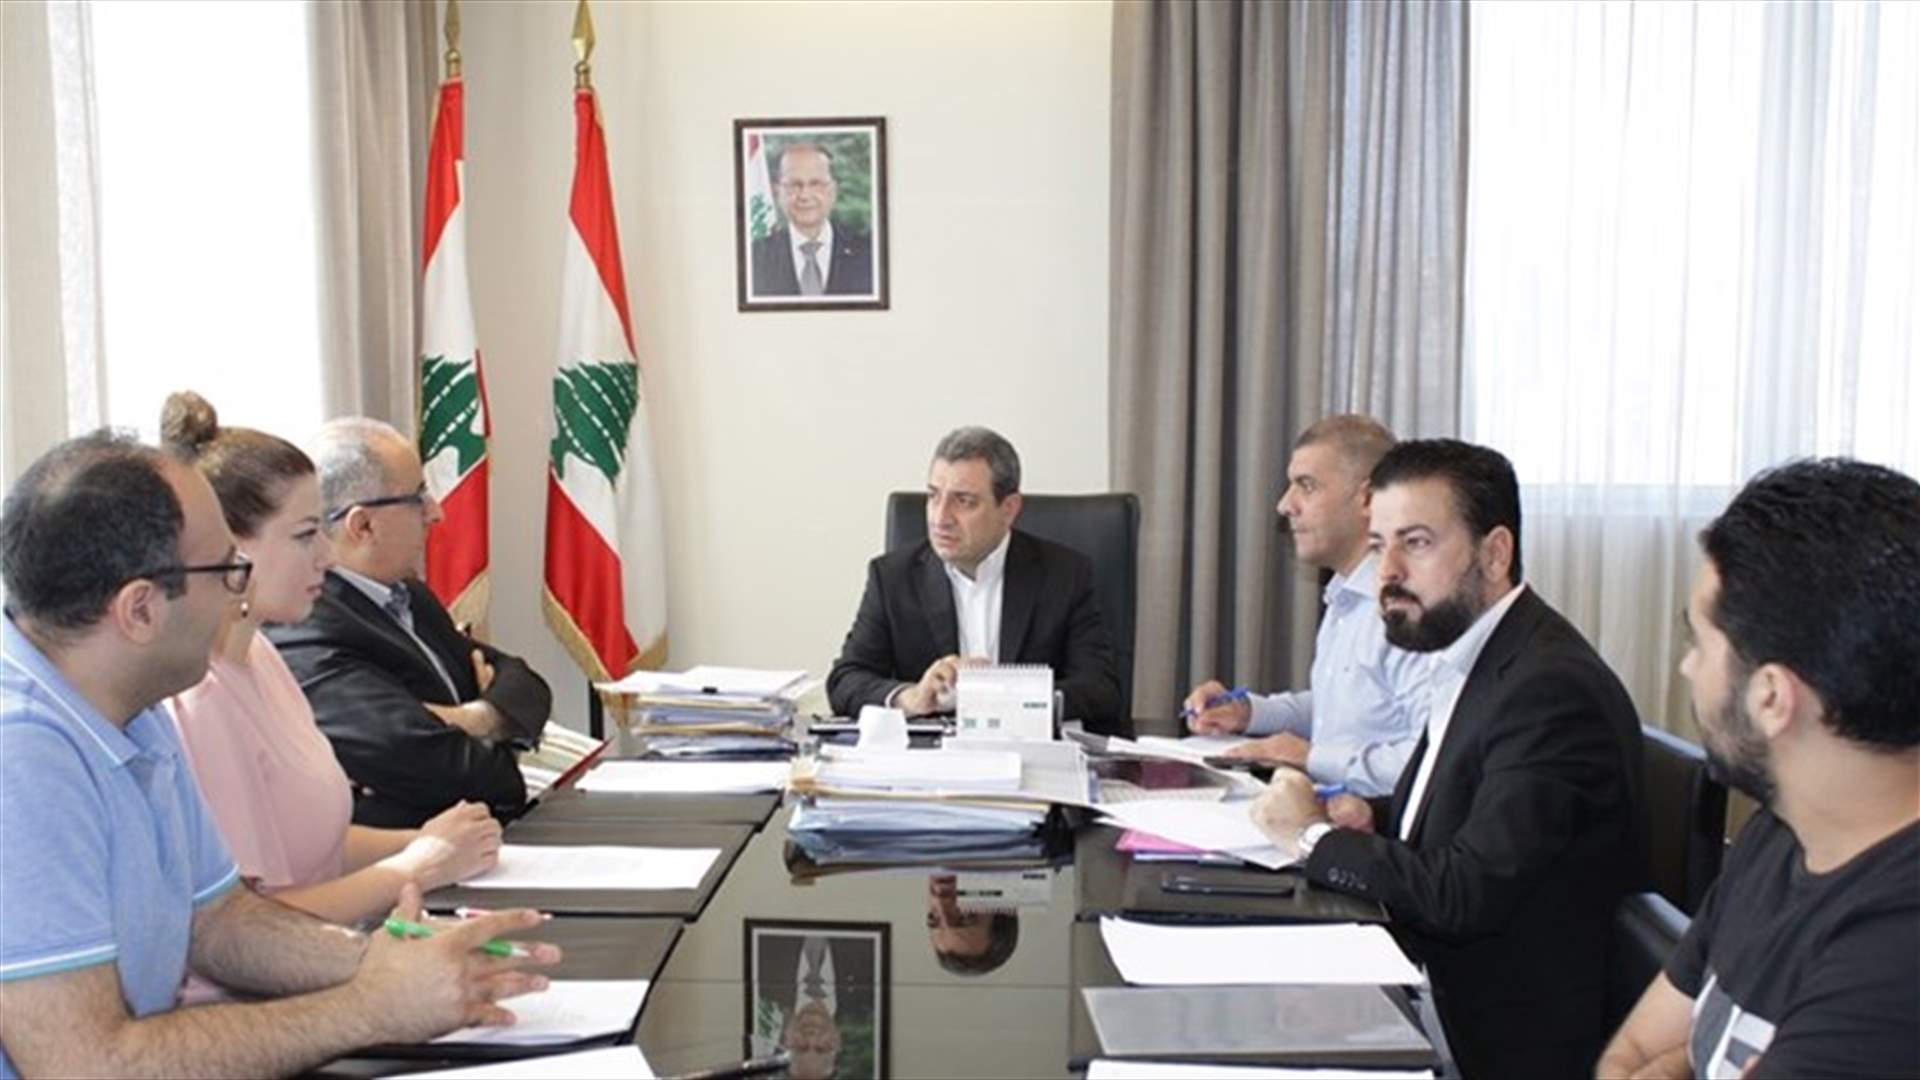 أبو فاعور: وزارة الصناعة ترسي قواعد تفاوضية صلبة تحمي مصالح لبنان الاقتصادية والتصديرية